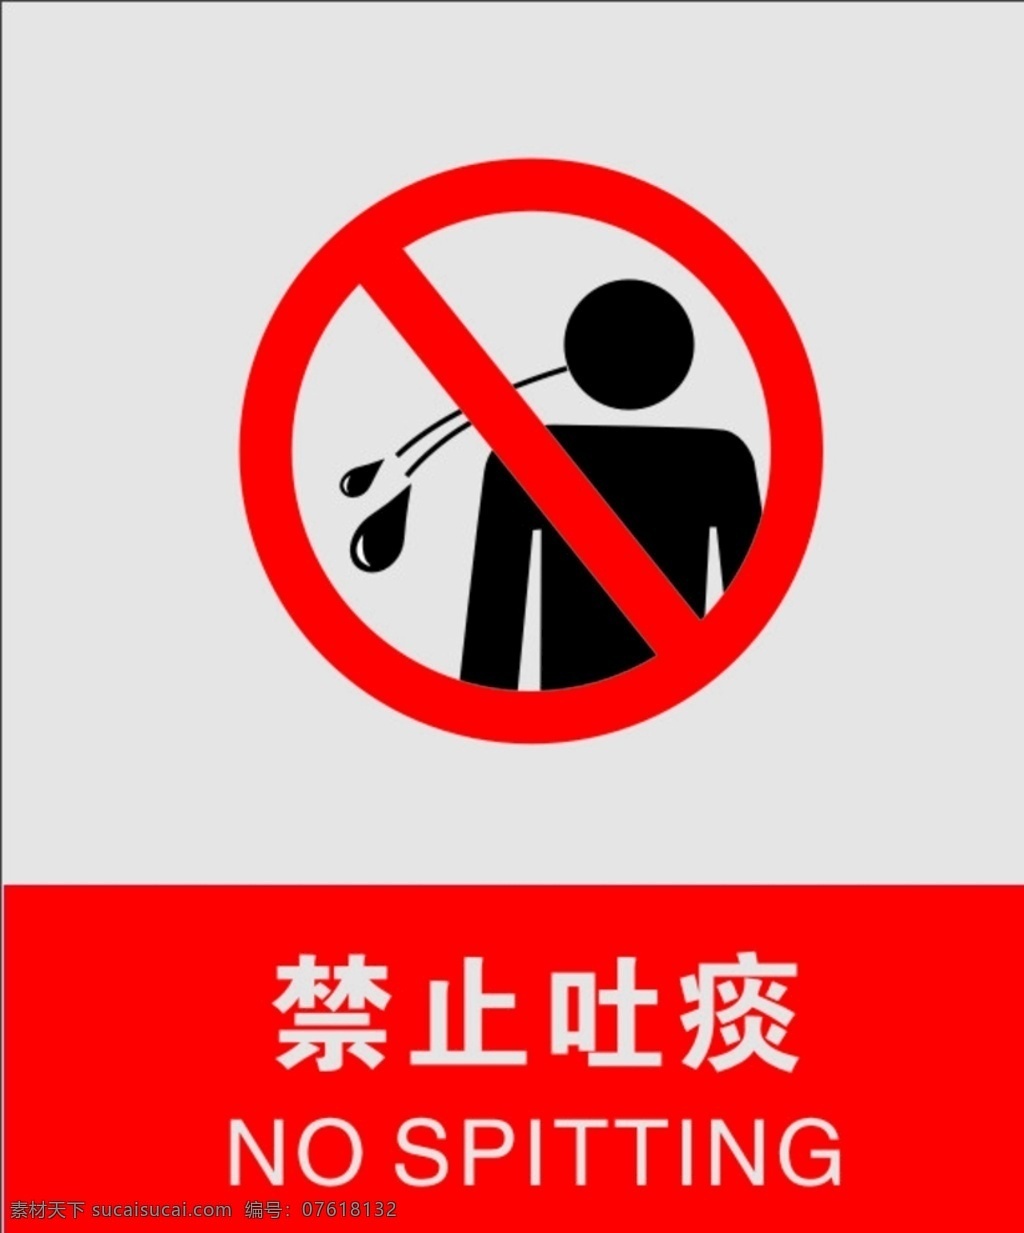 禁止吐痰 不文明行为 禁止 公共场所吐痰 不能吐痰 吐痰罚款 标志图标 公共标识标志